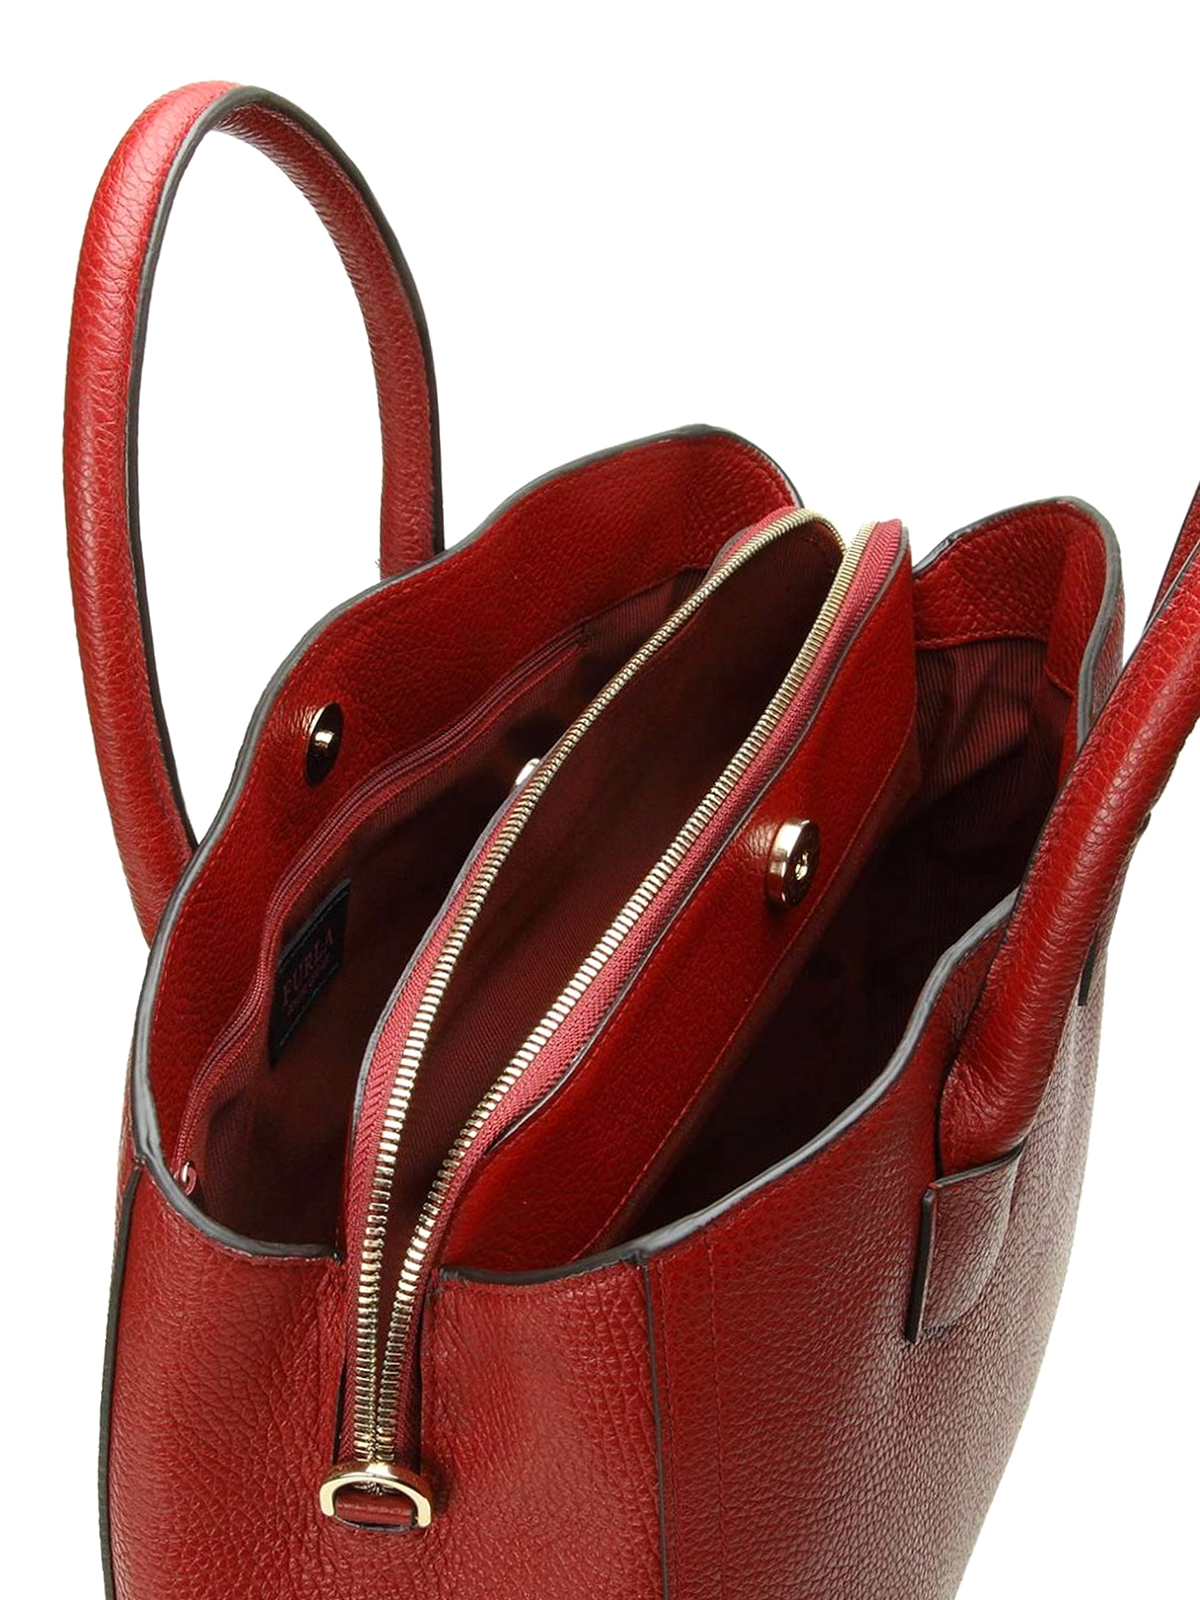 Totes bags Furla Alba cherry red leather medium - 984353